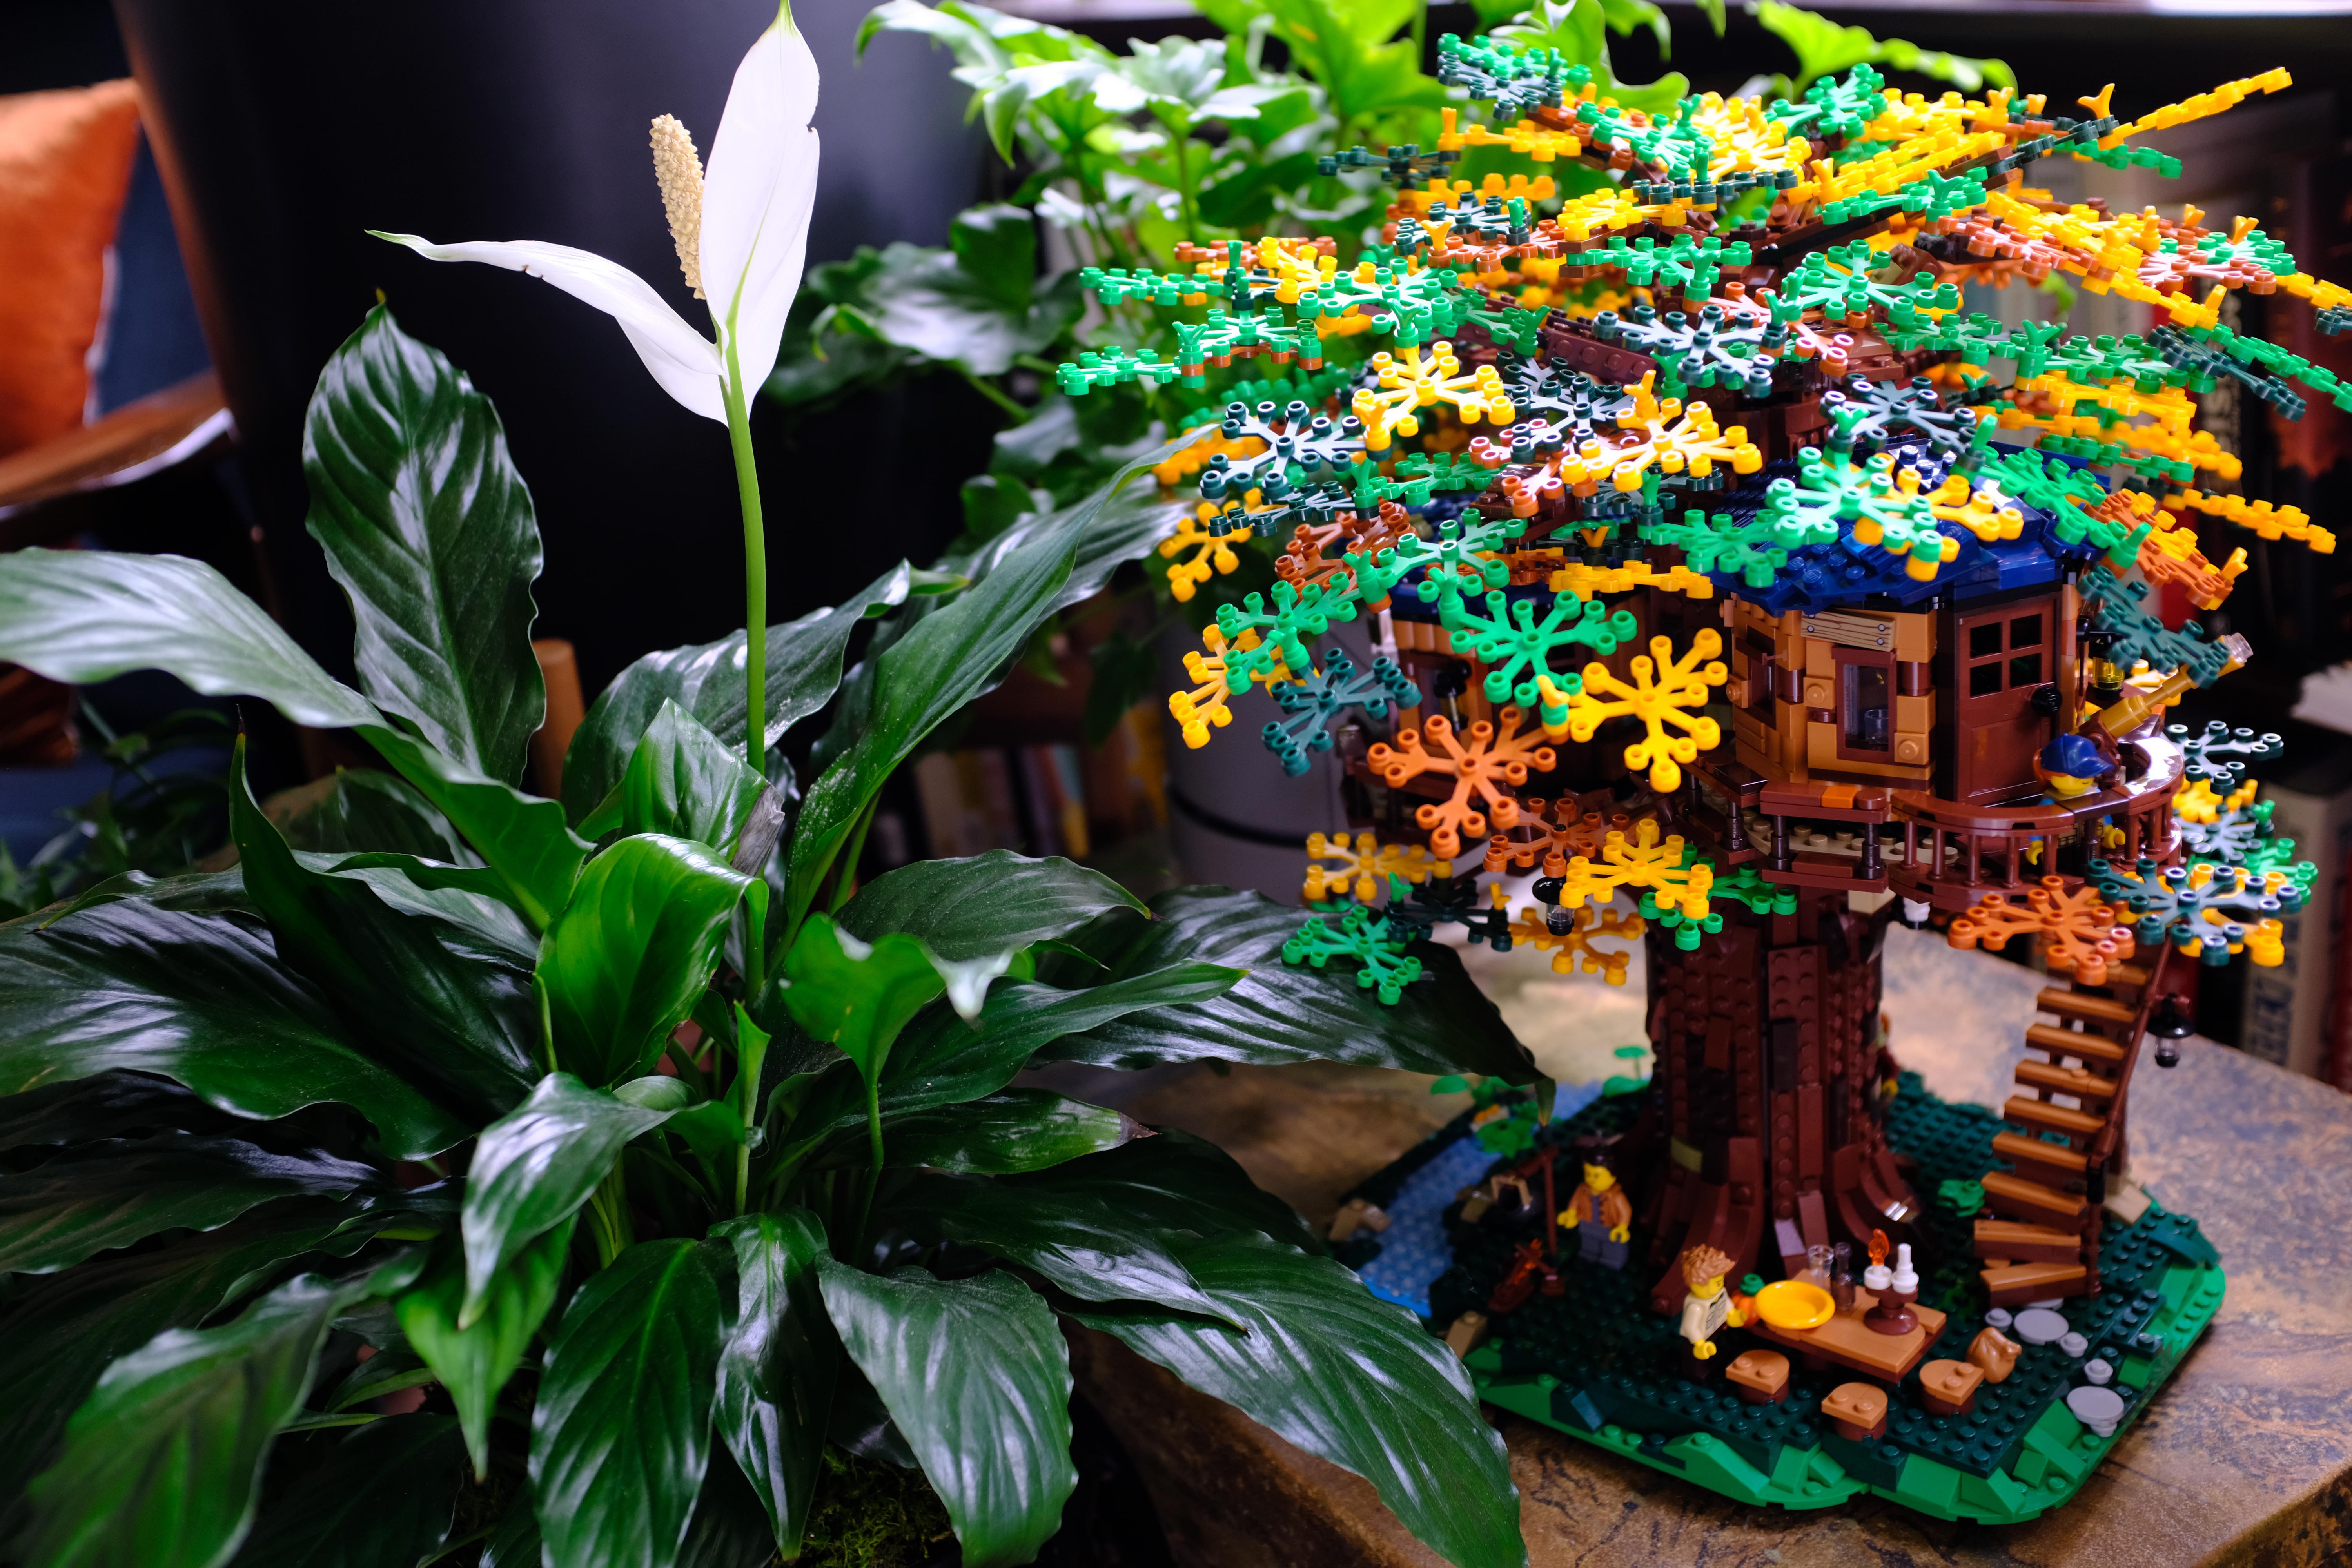 Photographie d'un lys en fleur et d'un arbre-cabane Lego.